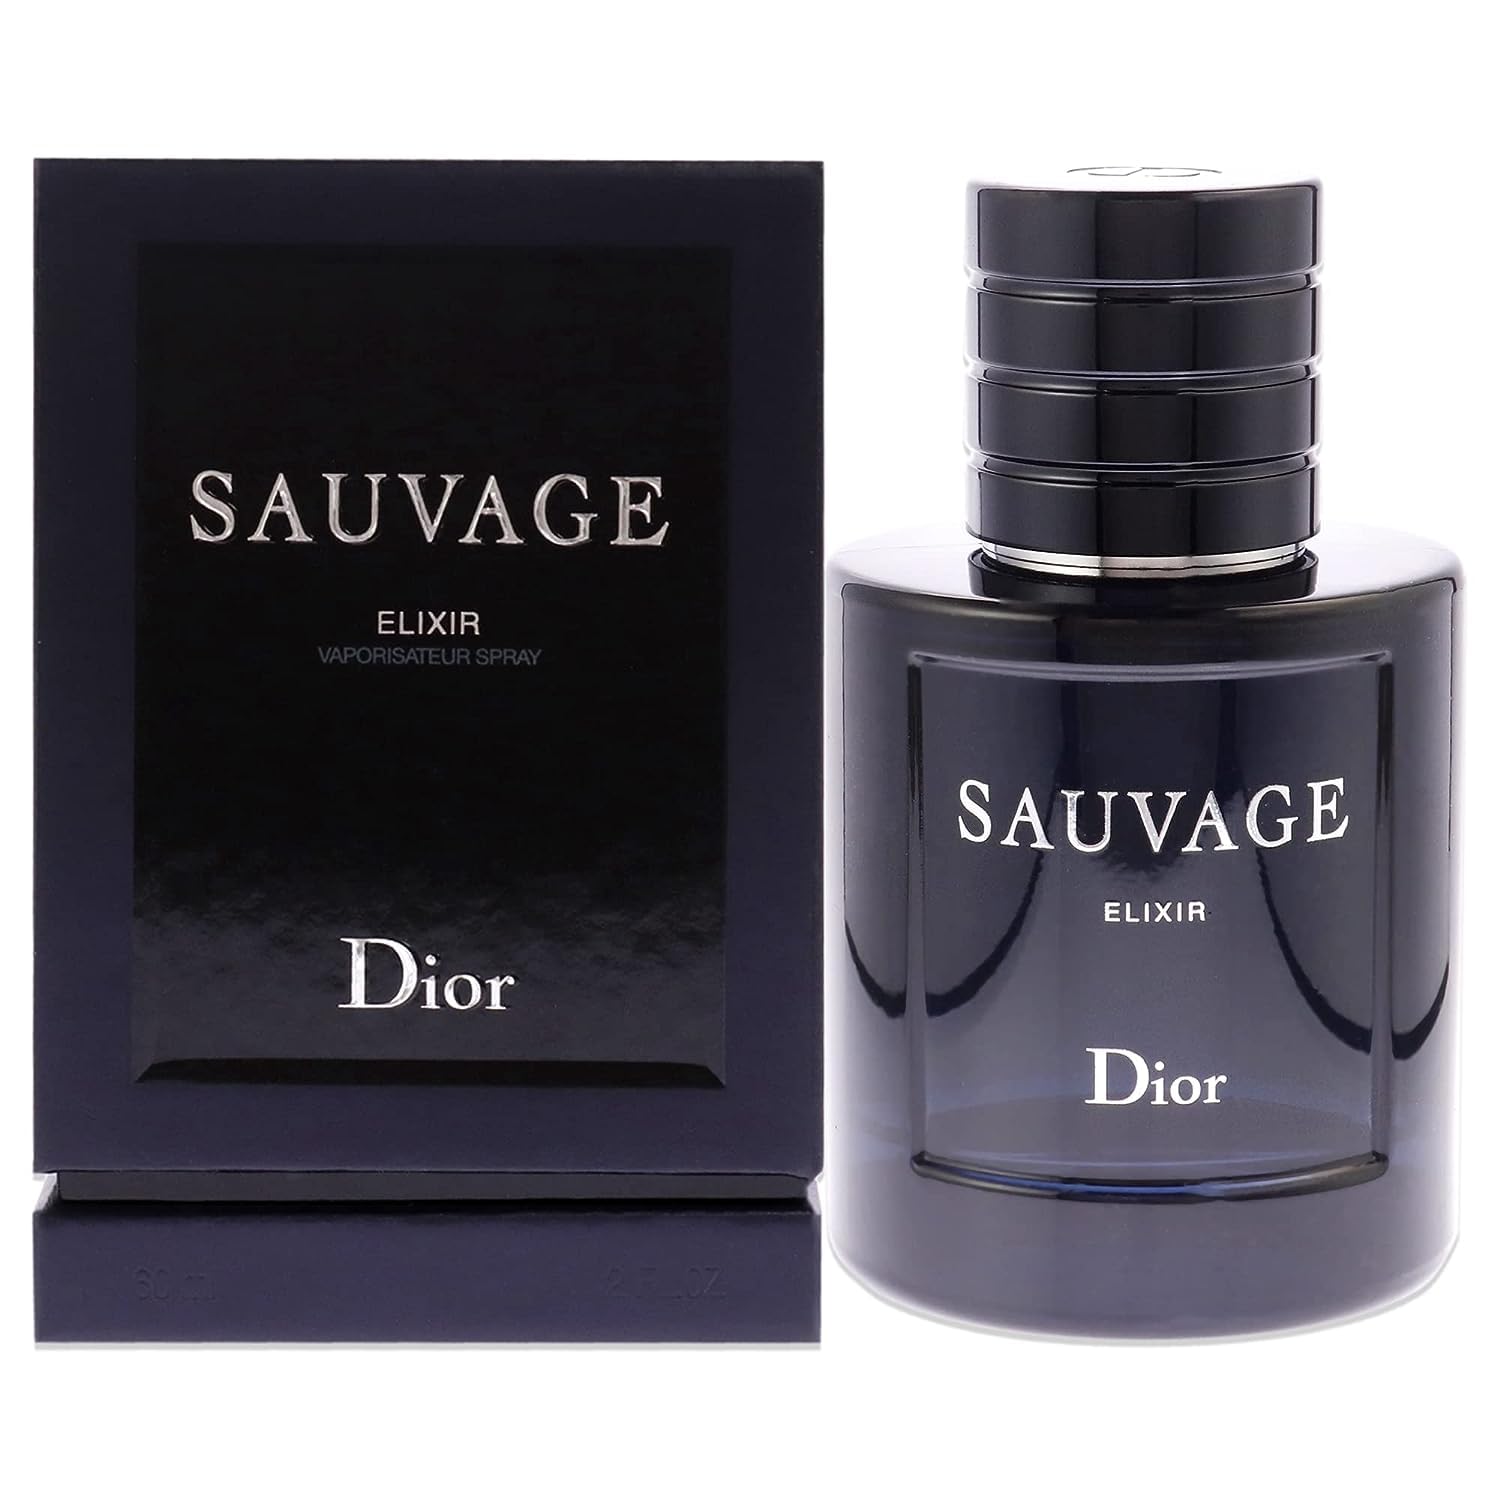 Sauvage Elixir by Dior Elixir Spray for Men